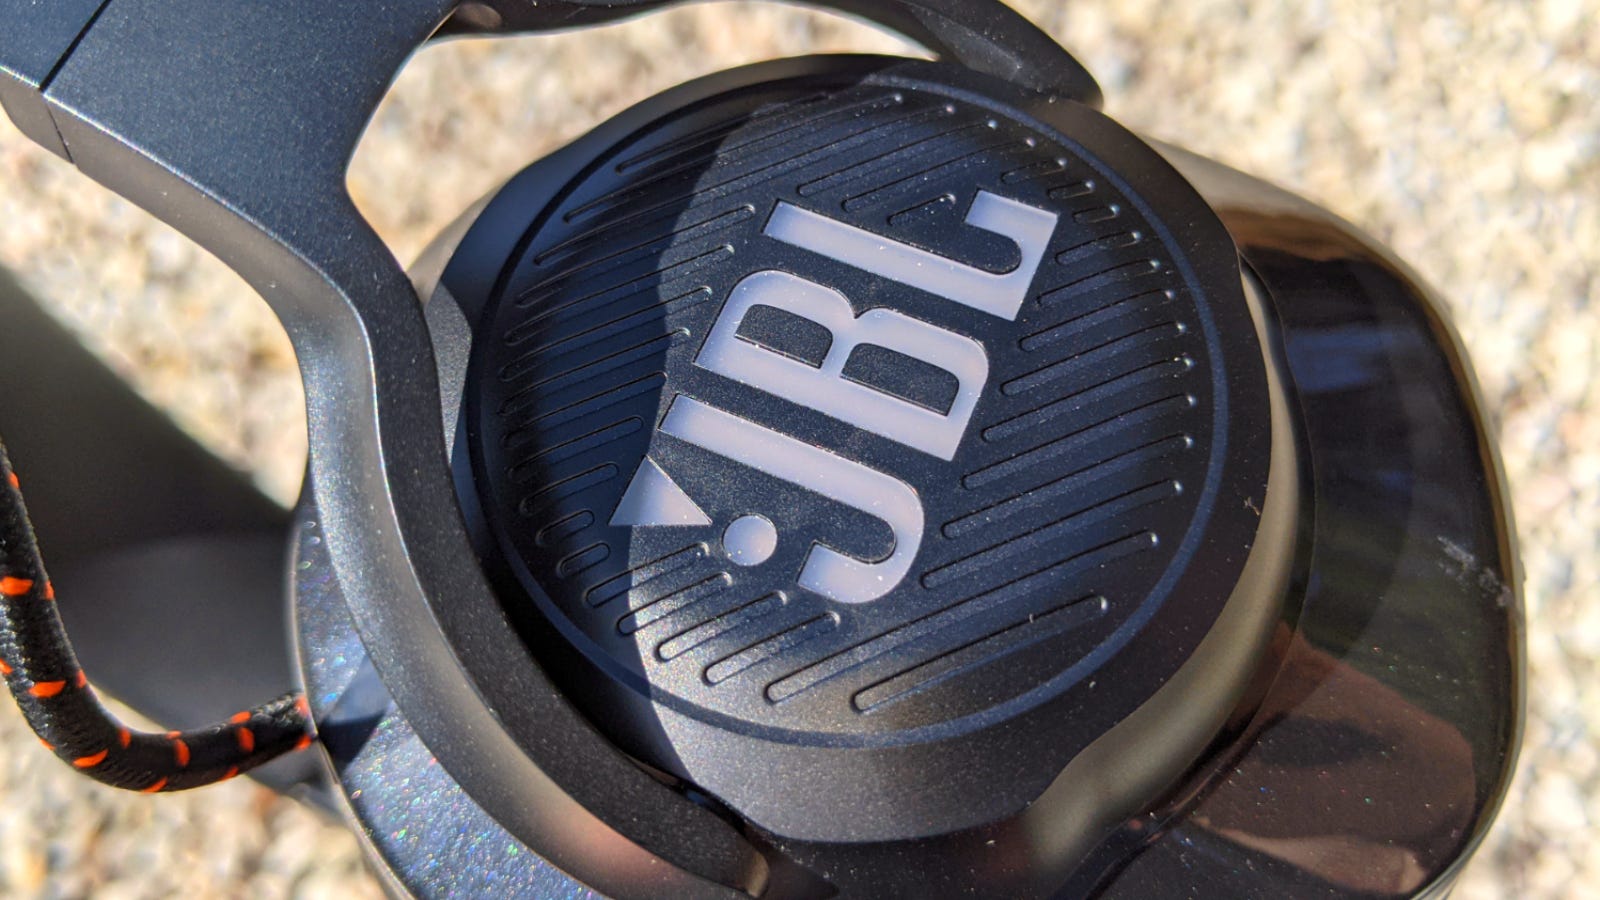 Närbild av JBL-logotypen på öronkåporna på Quantum 600. Hörlurar